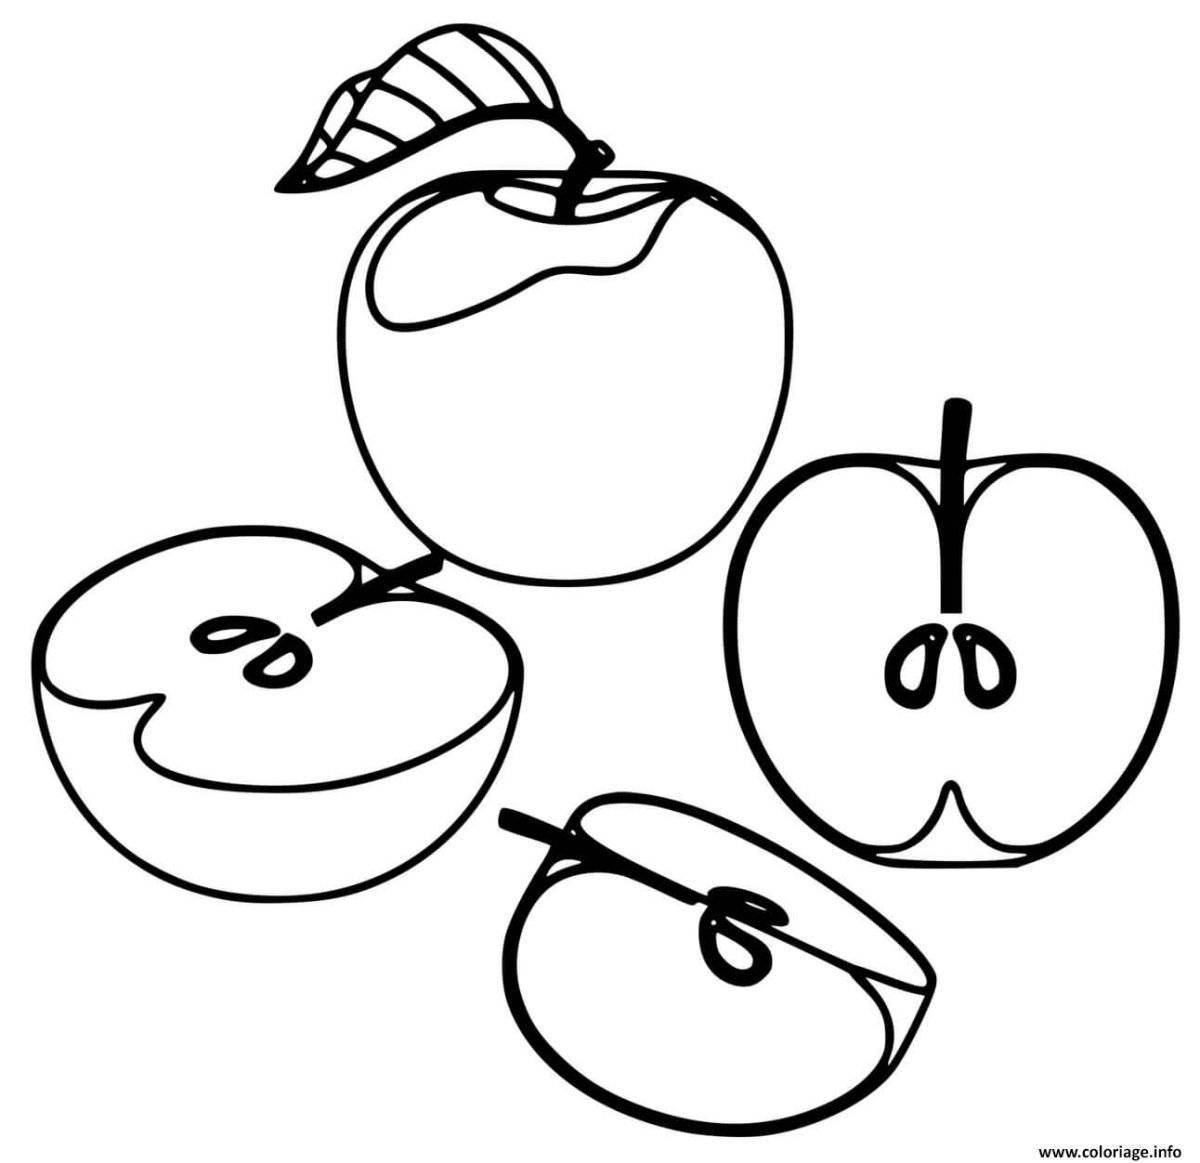 Раскраска «игривое разрезанное яблоко»